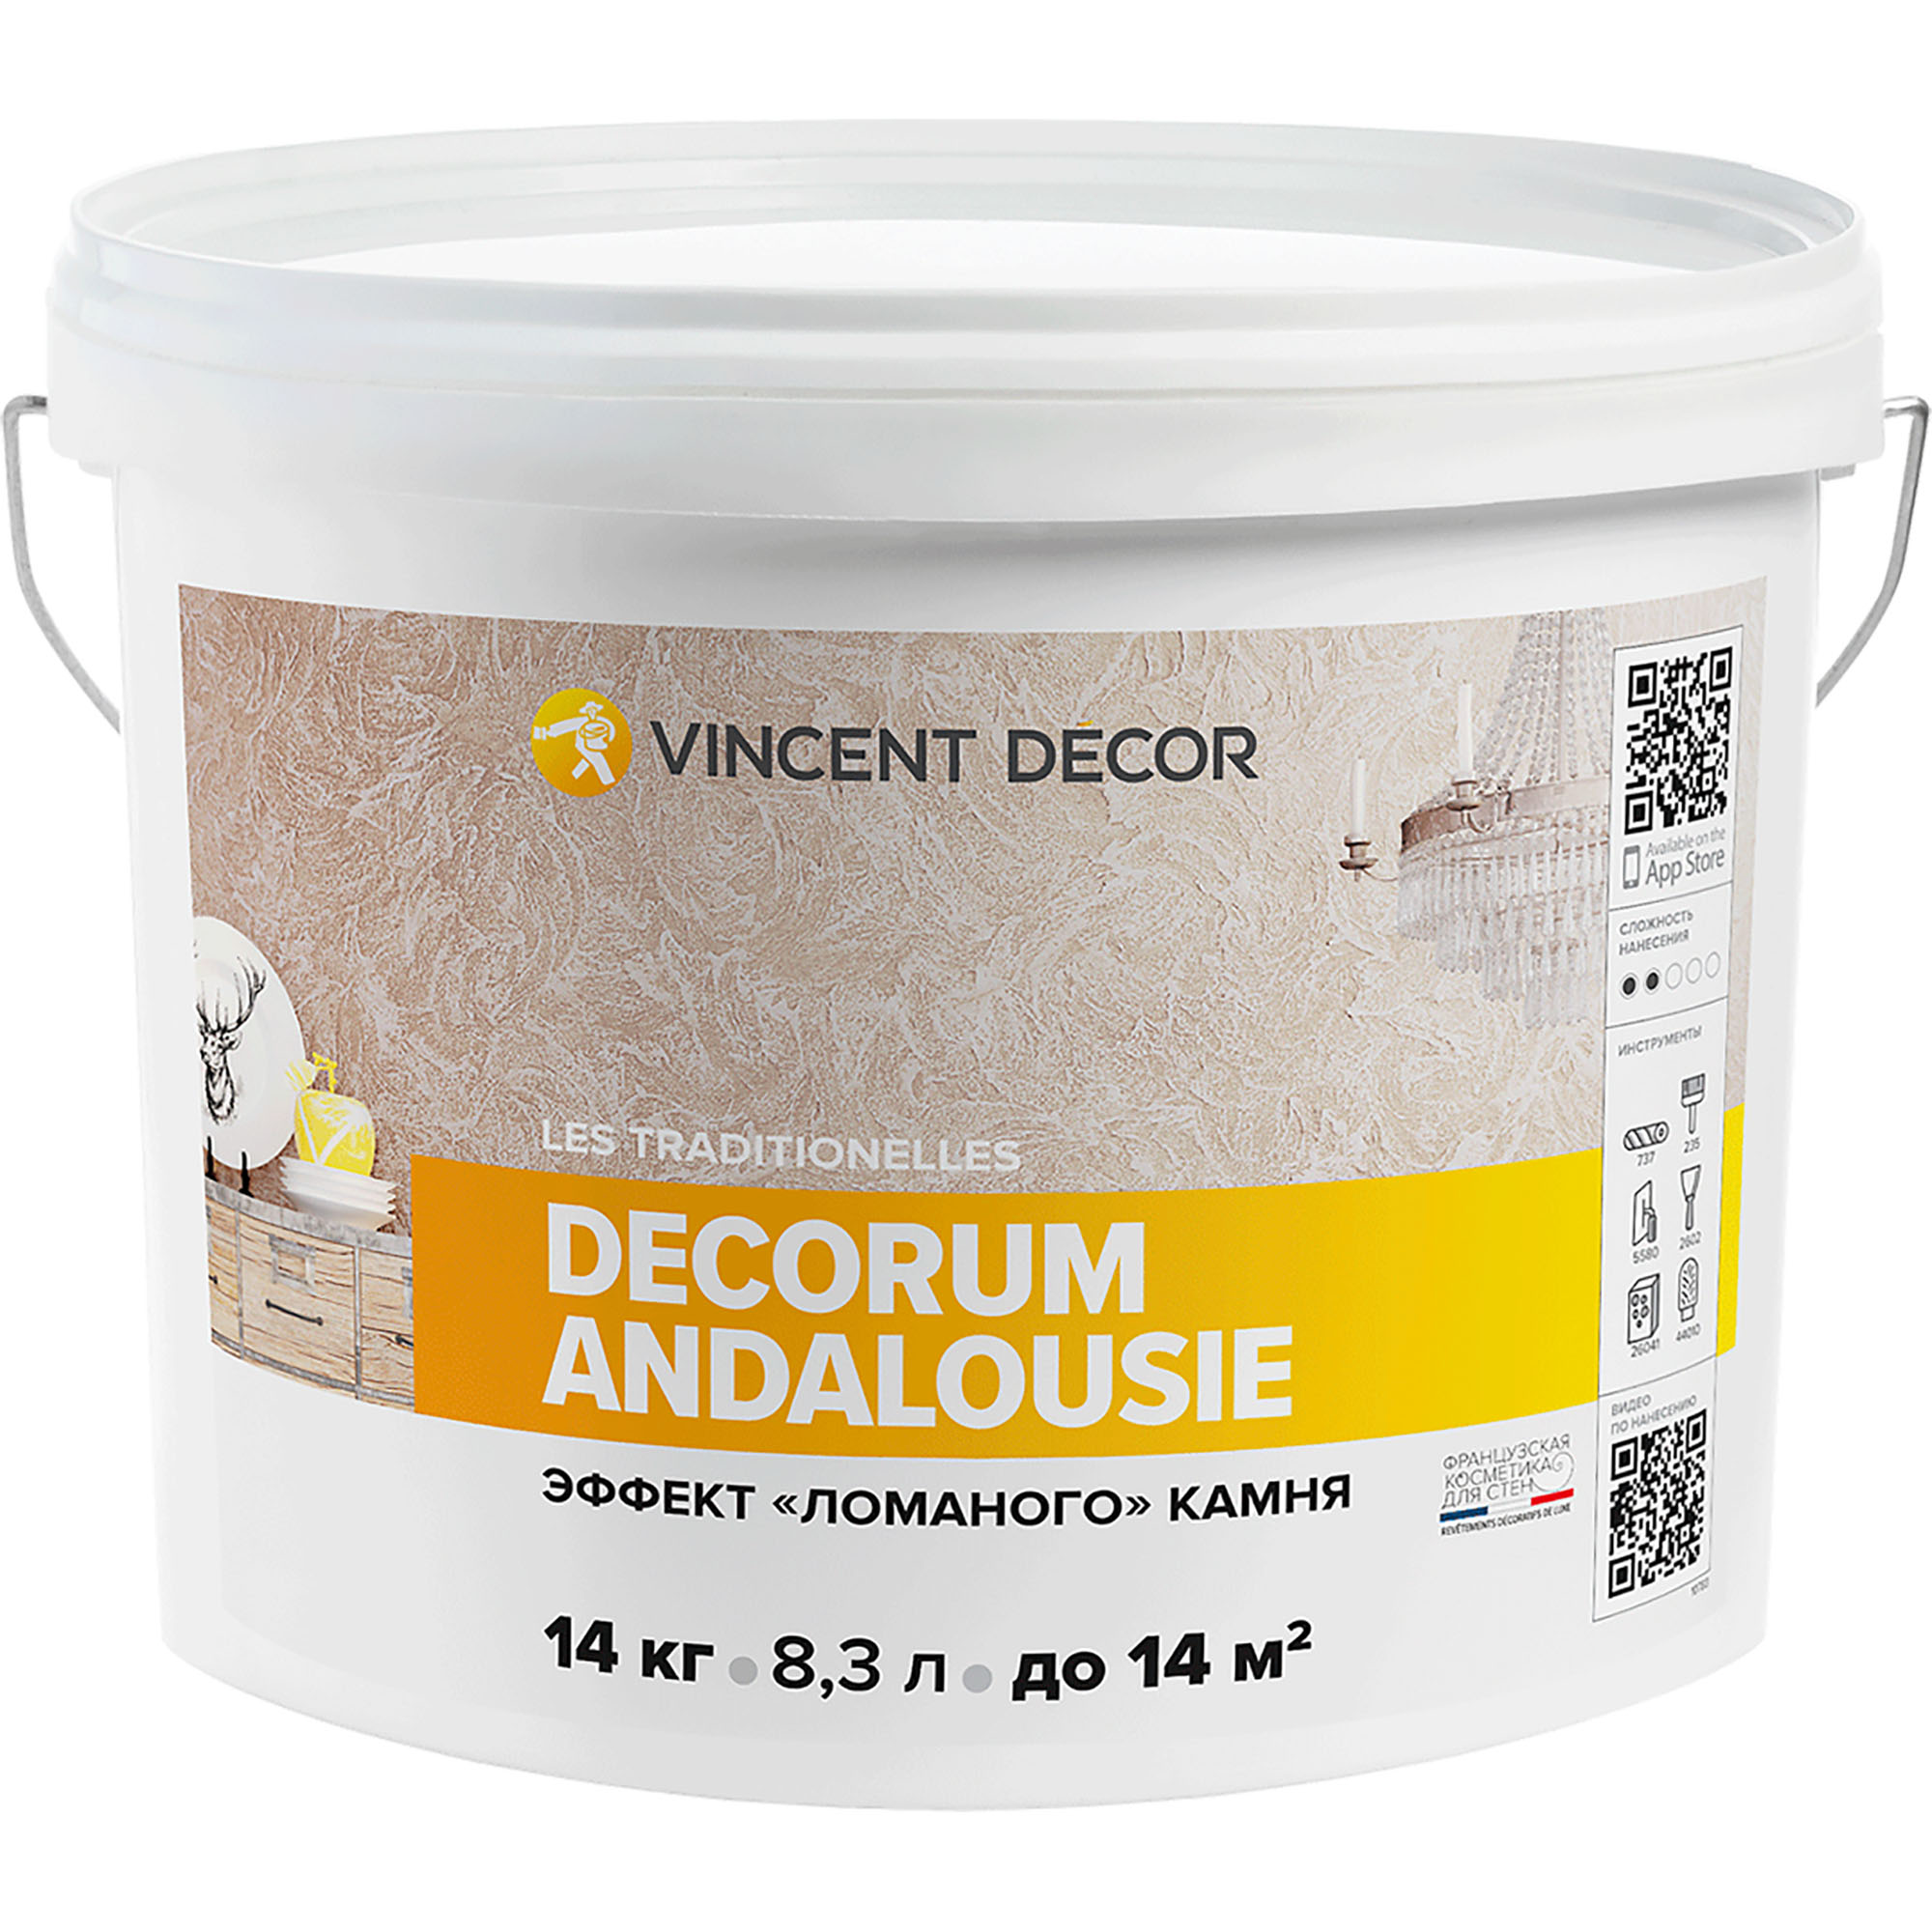 Декоративное покрытие Vincent Decor Decorum Andalousie c эффектом ломаного камня 14 кг верхнее покрытие лака для ногтей